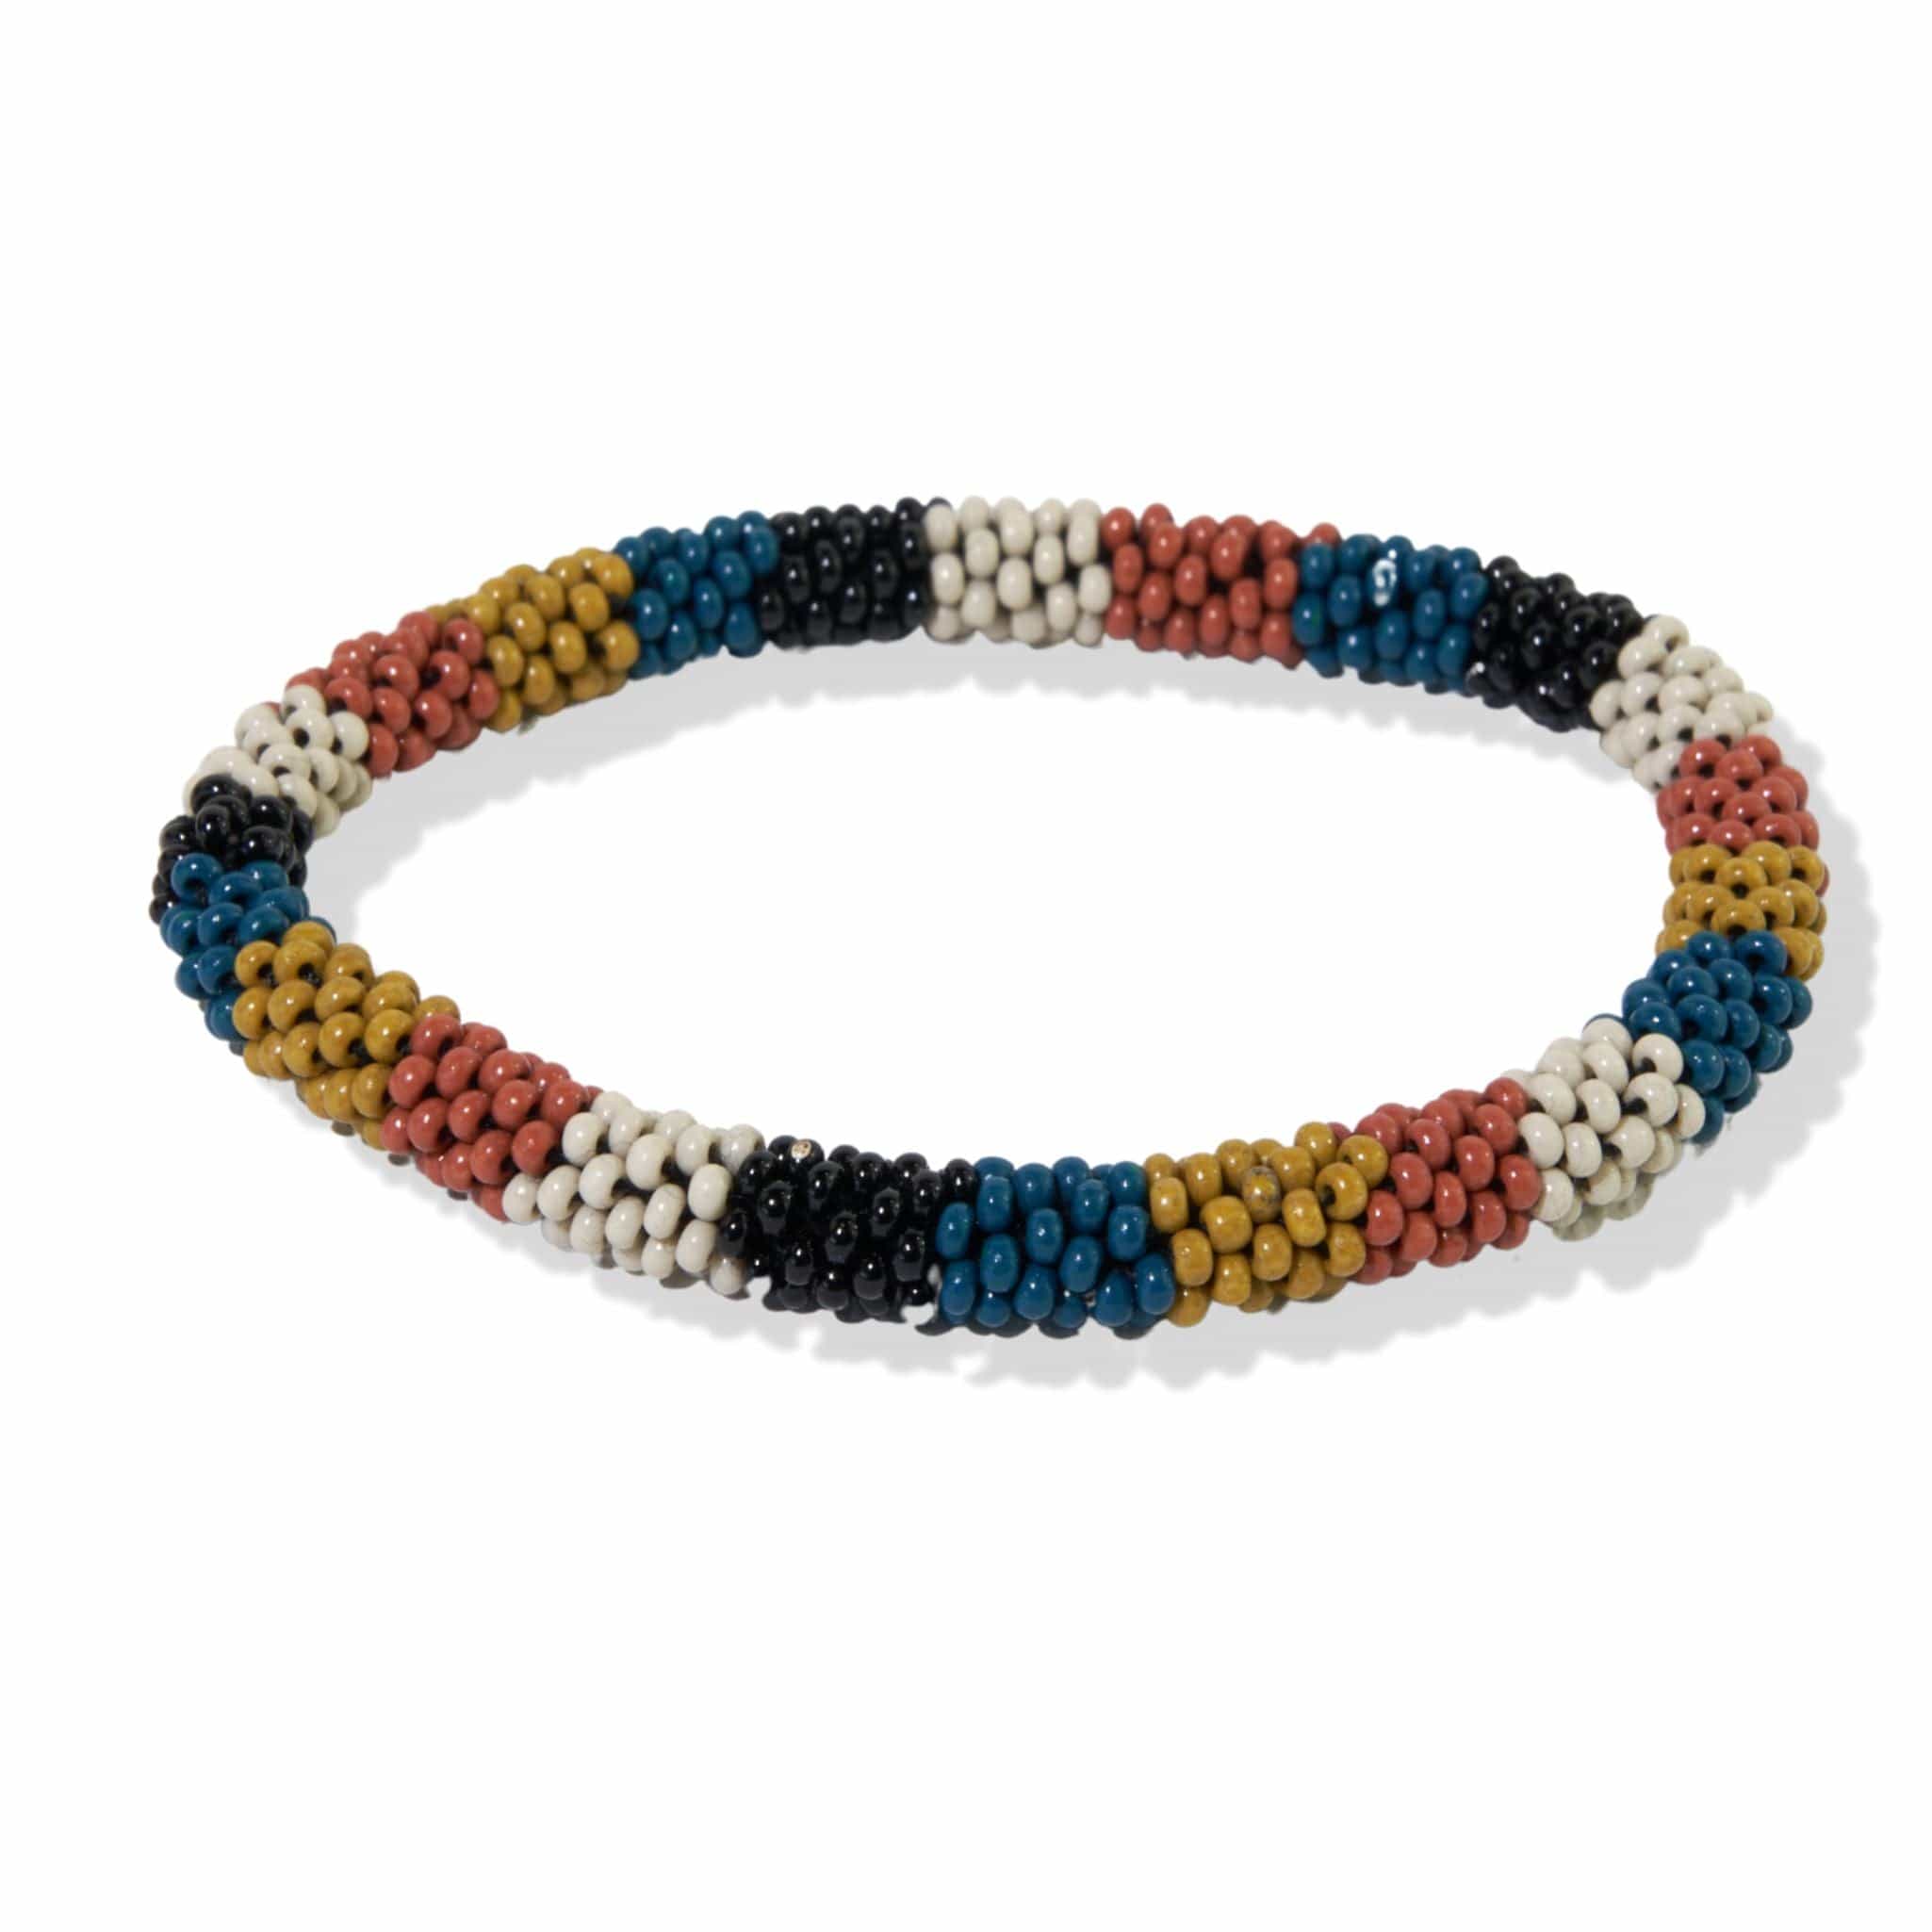 Handmade VALENTINE bracelet in miyuki beads and rhinestones